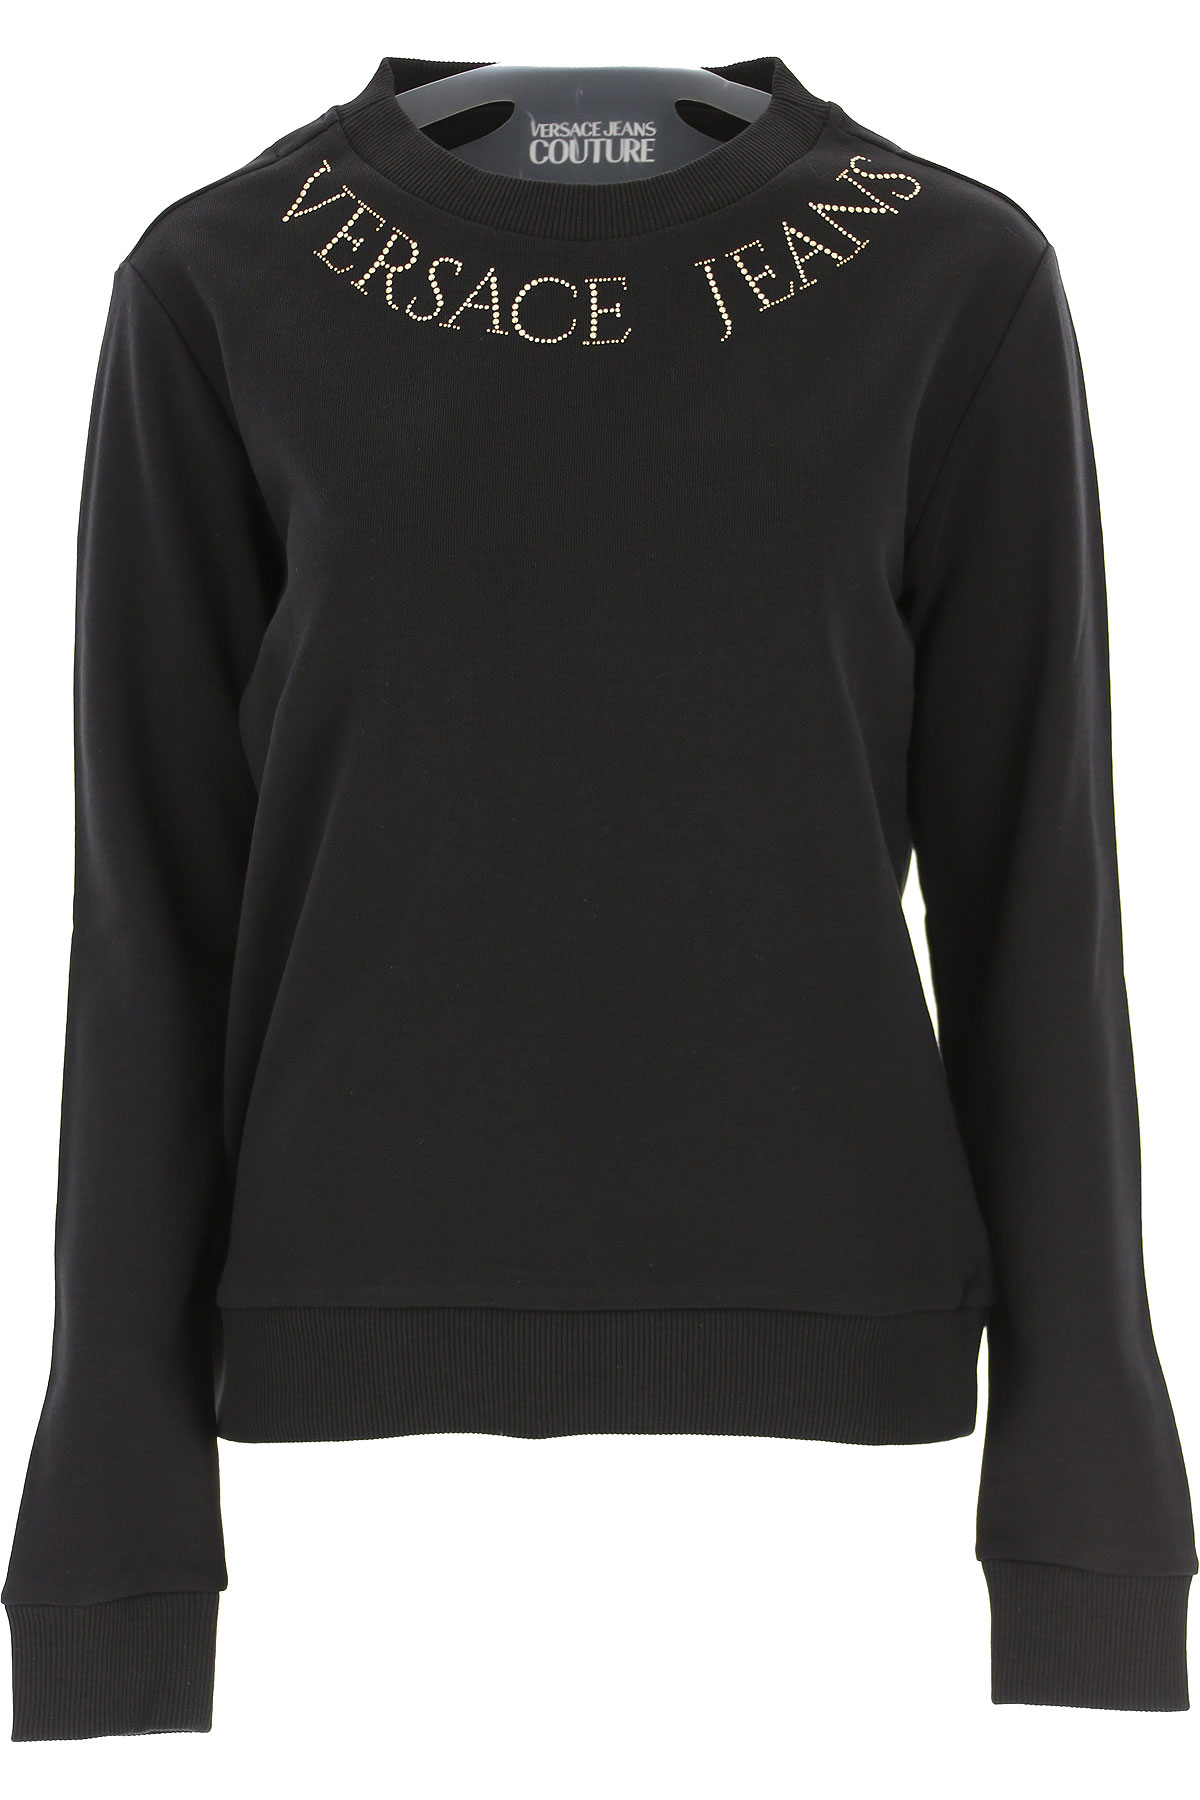 Versace Jeans Couture Sweatshirt für Damen, Kapuzenpulli, Hoodie, Sweats Günstig im Sale, Schwarz, Baumwolle, 2017, 46 M